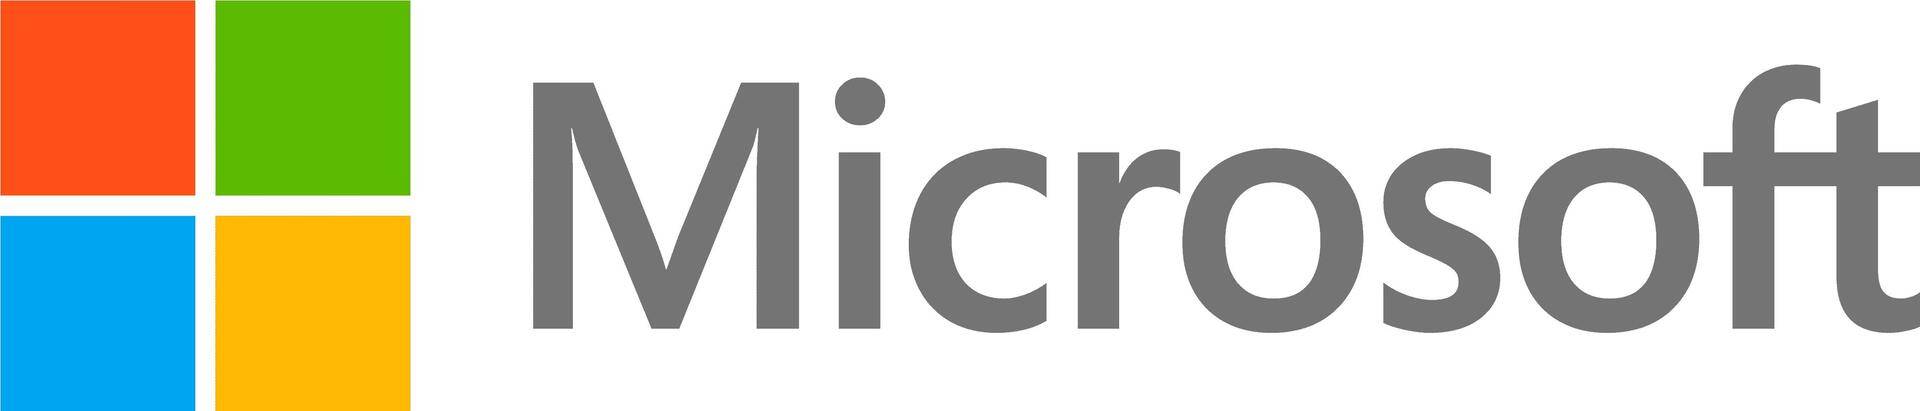 Microsoft DG7GMGF0D609.0002 Software-Lizenz/-Upgrade 1 Lizenz(en) (DG7GMGF0D609.0002) von Microsoft